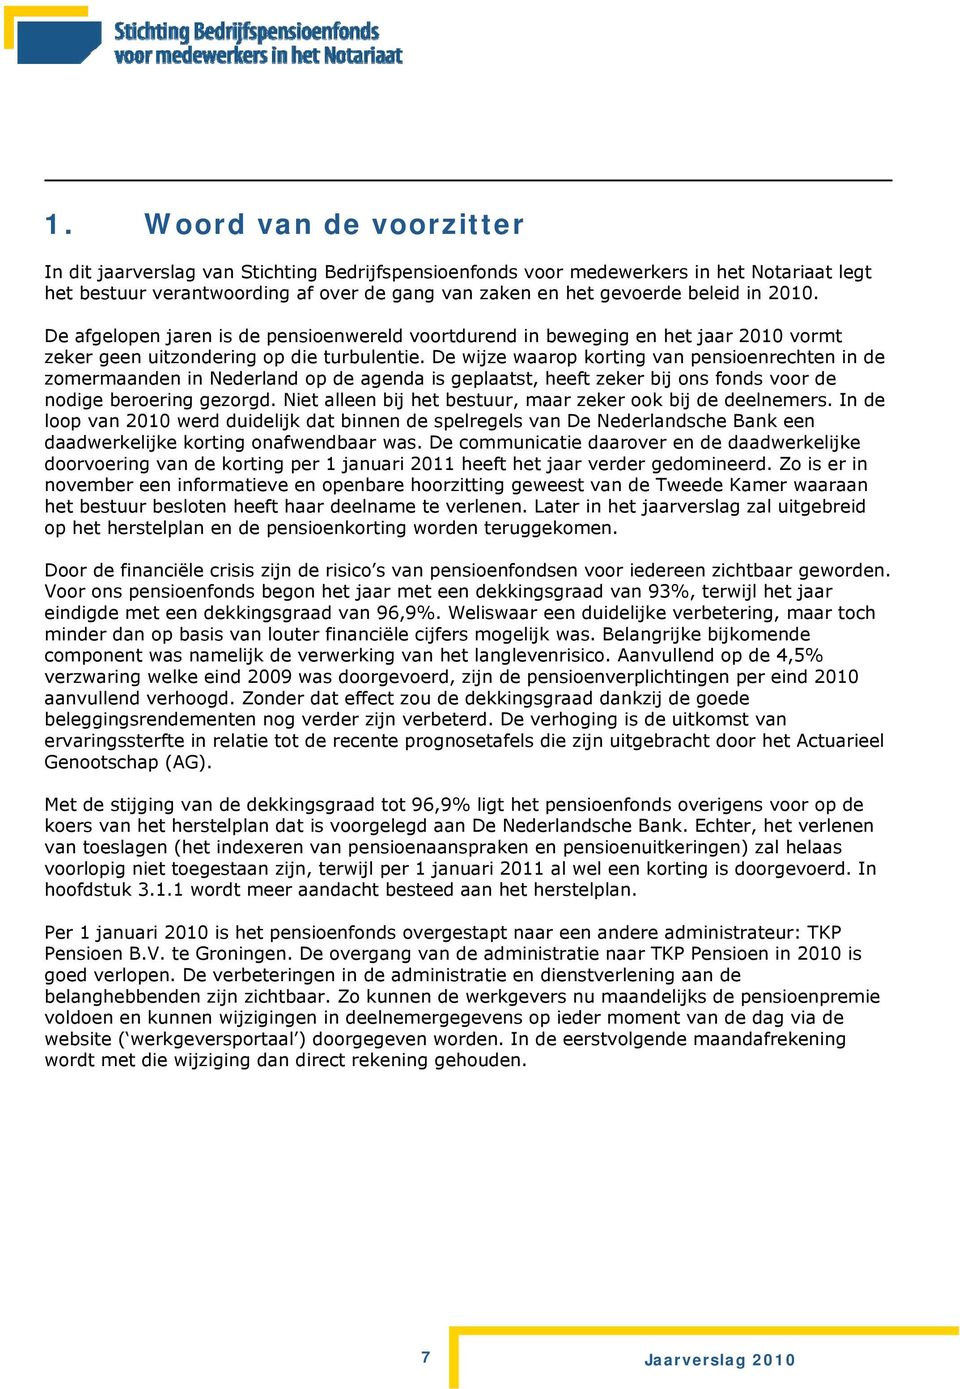 De wijze waarop korting van pensioenrechten in de zomermaanden in Nederland op de agenda is geplaatst, heeft zeker bij ons fonds voor de nodige beroering gezorgd.